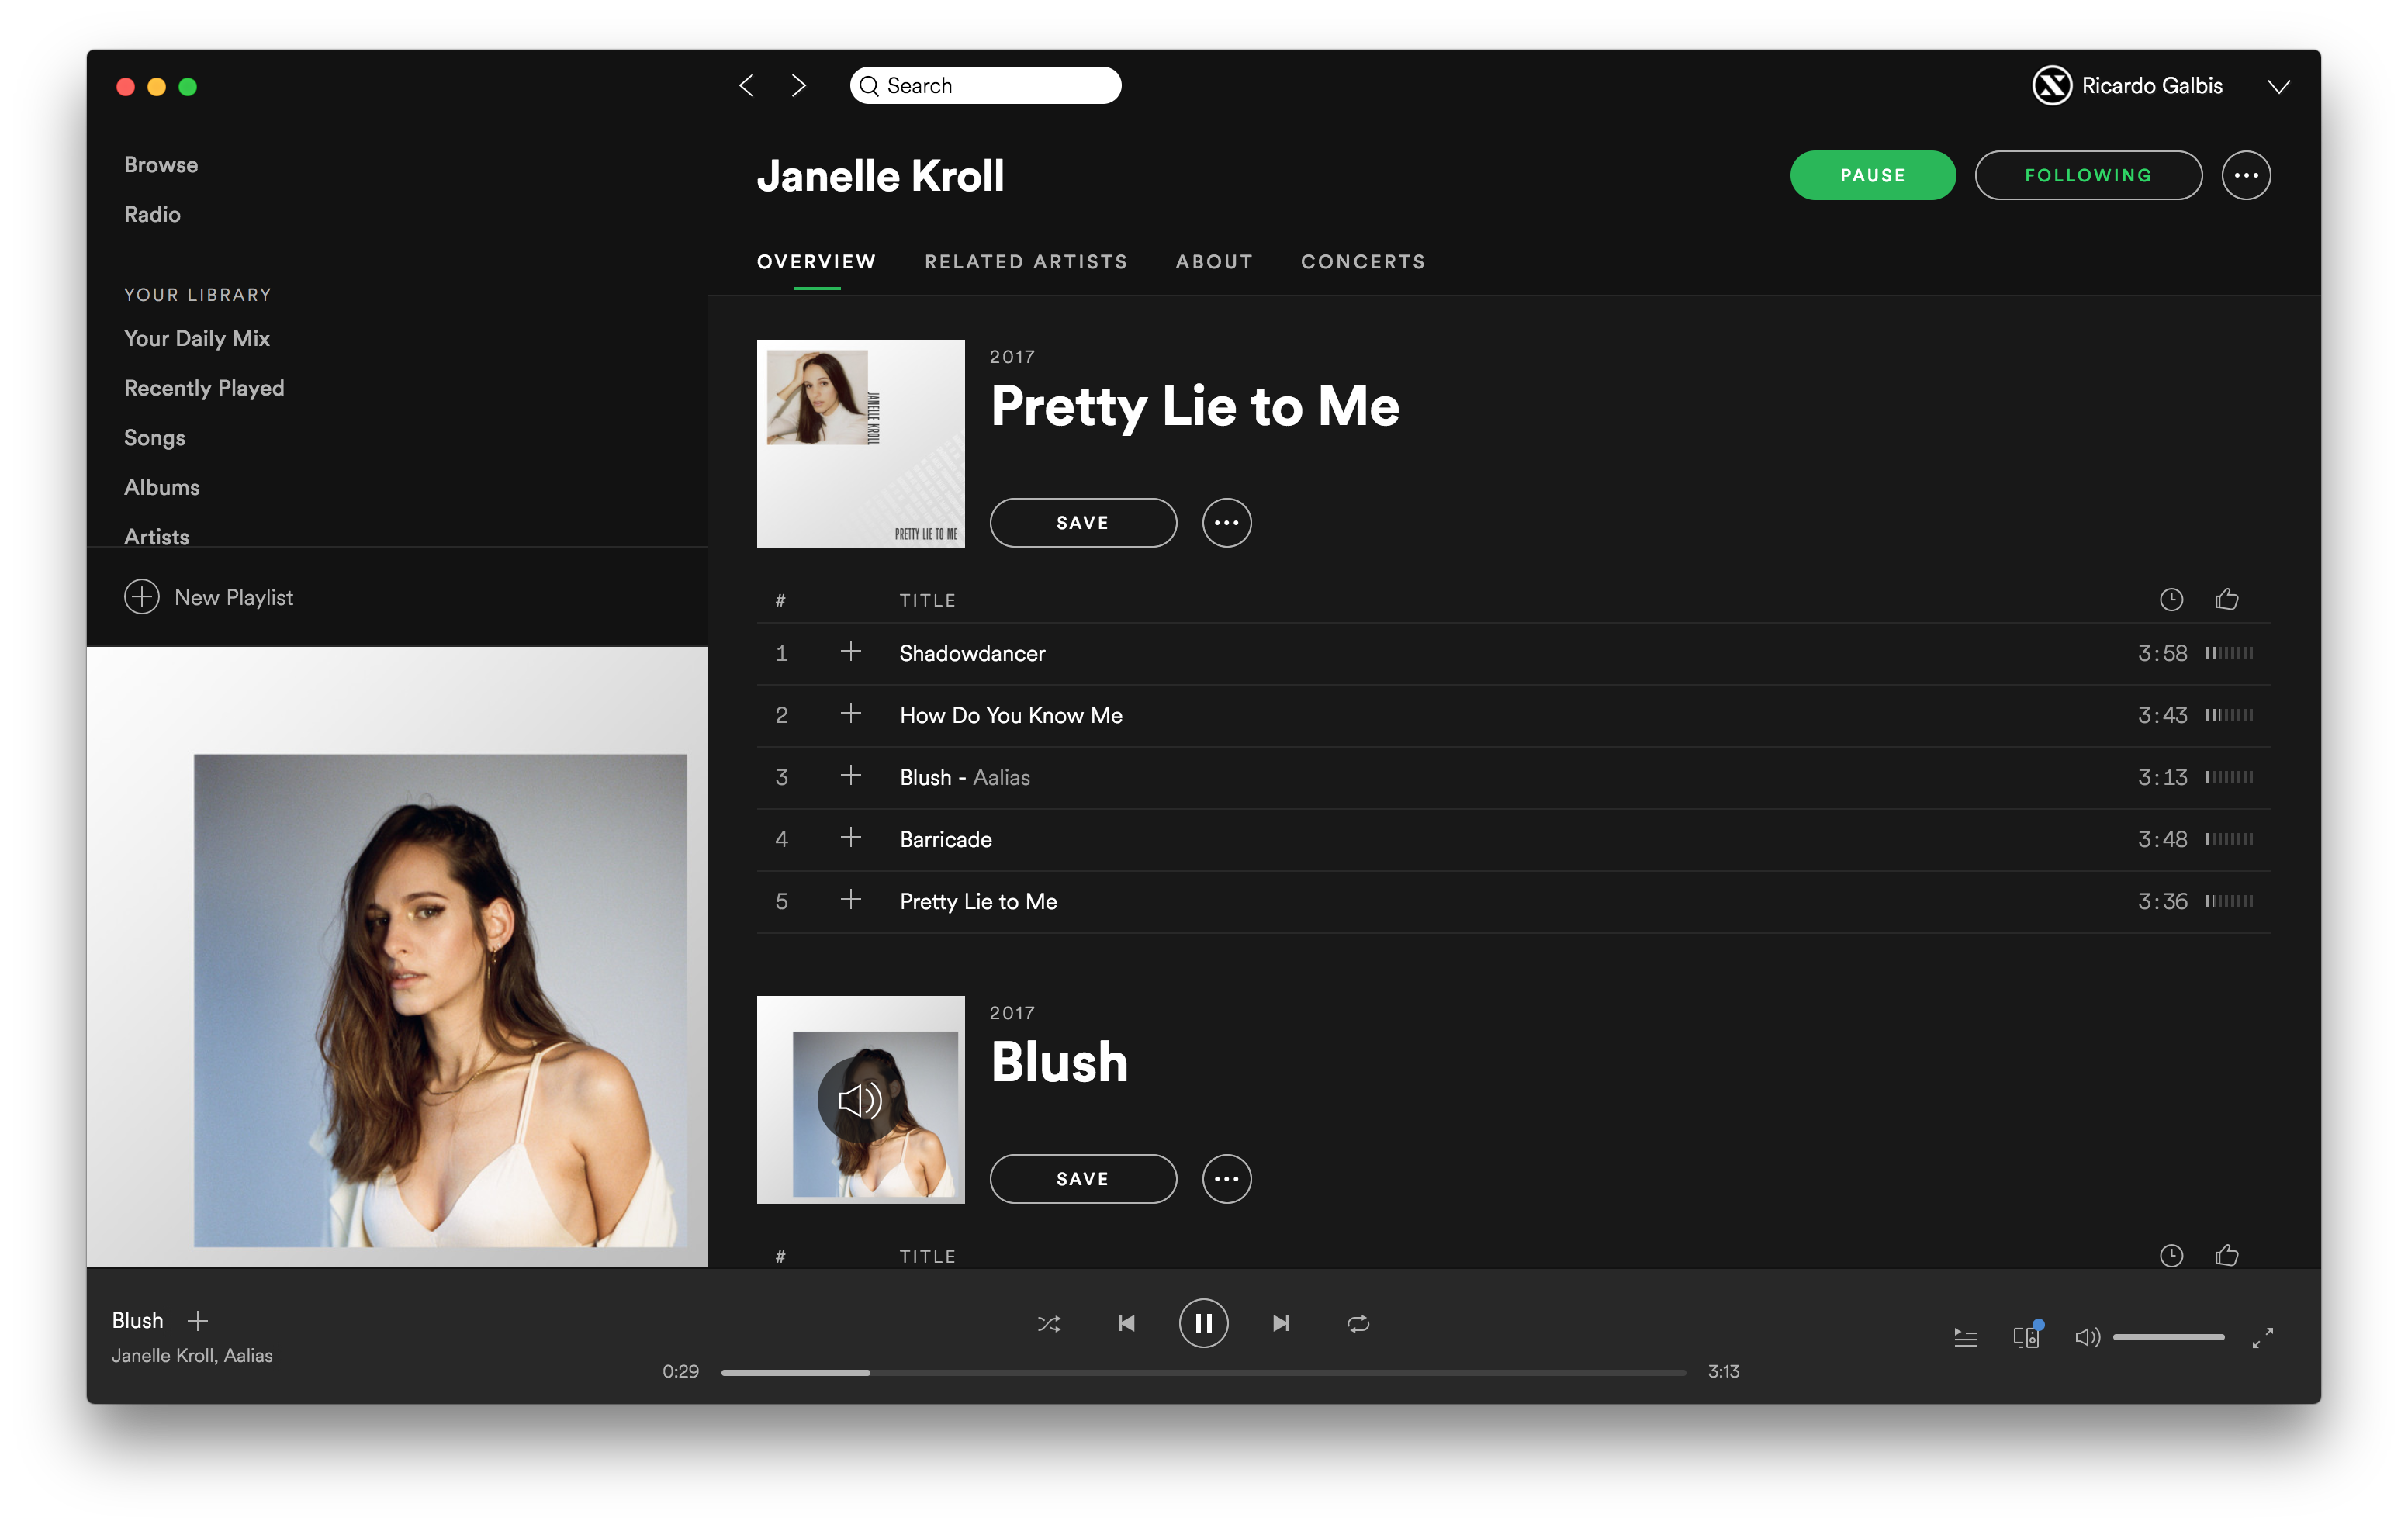 Janelle Kroll on Spotify